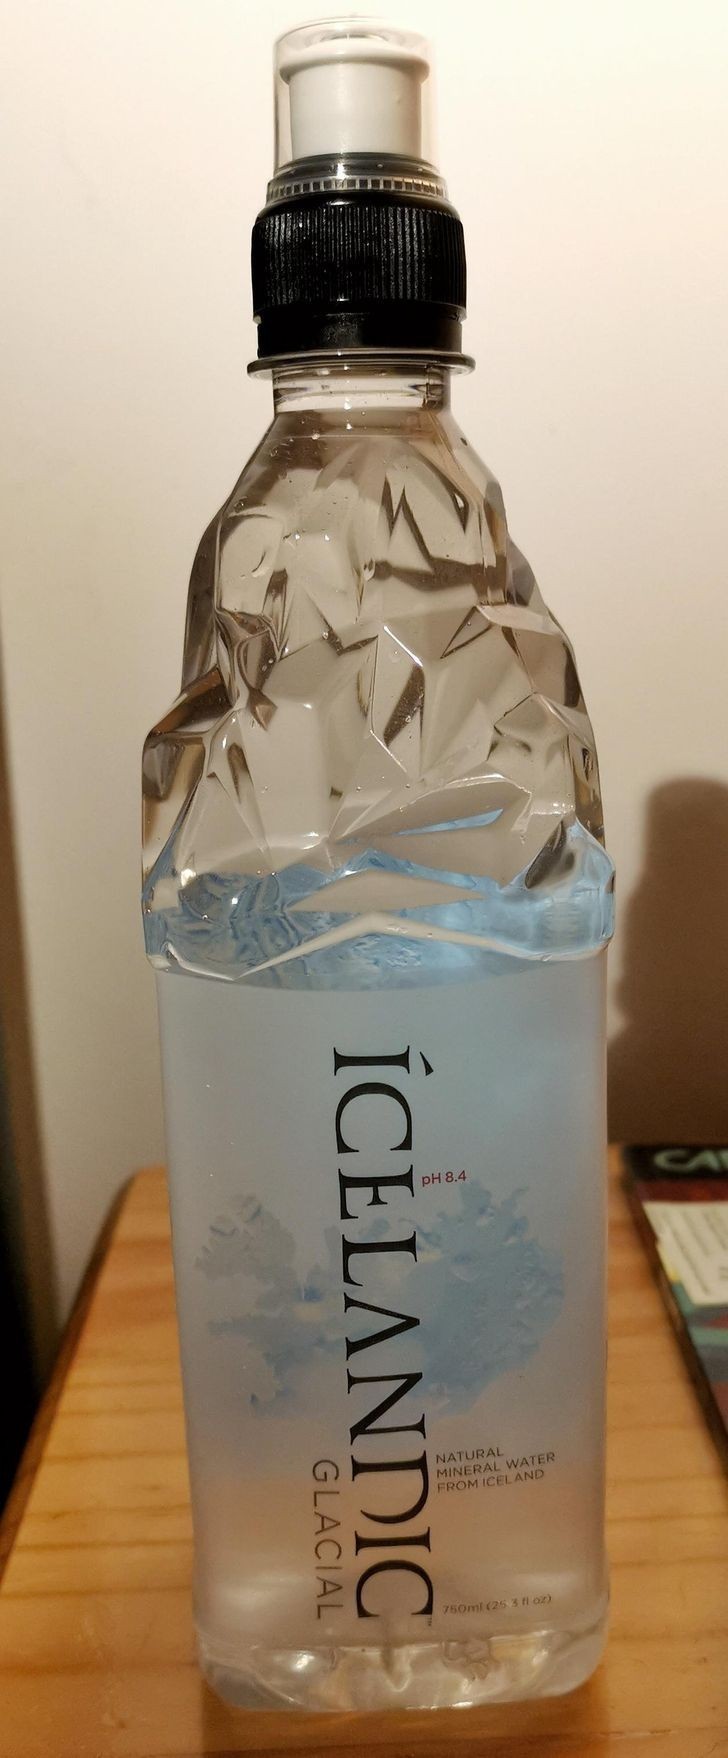 Butelka wody w kształcie lodowca